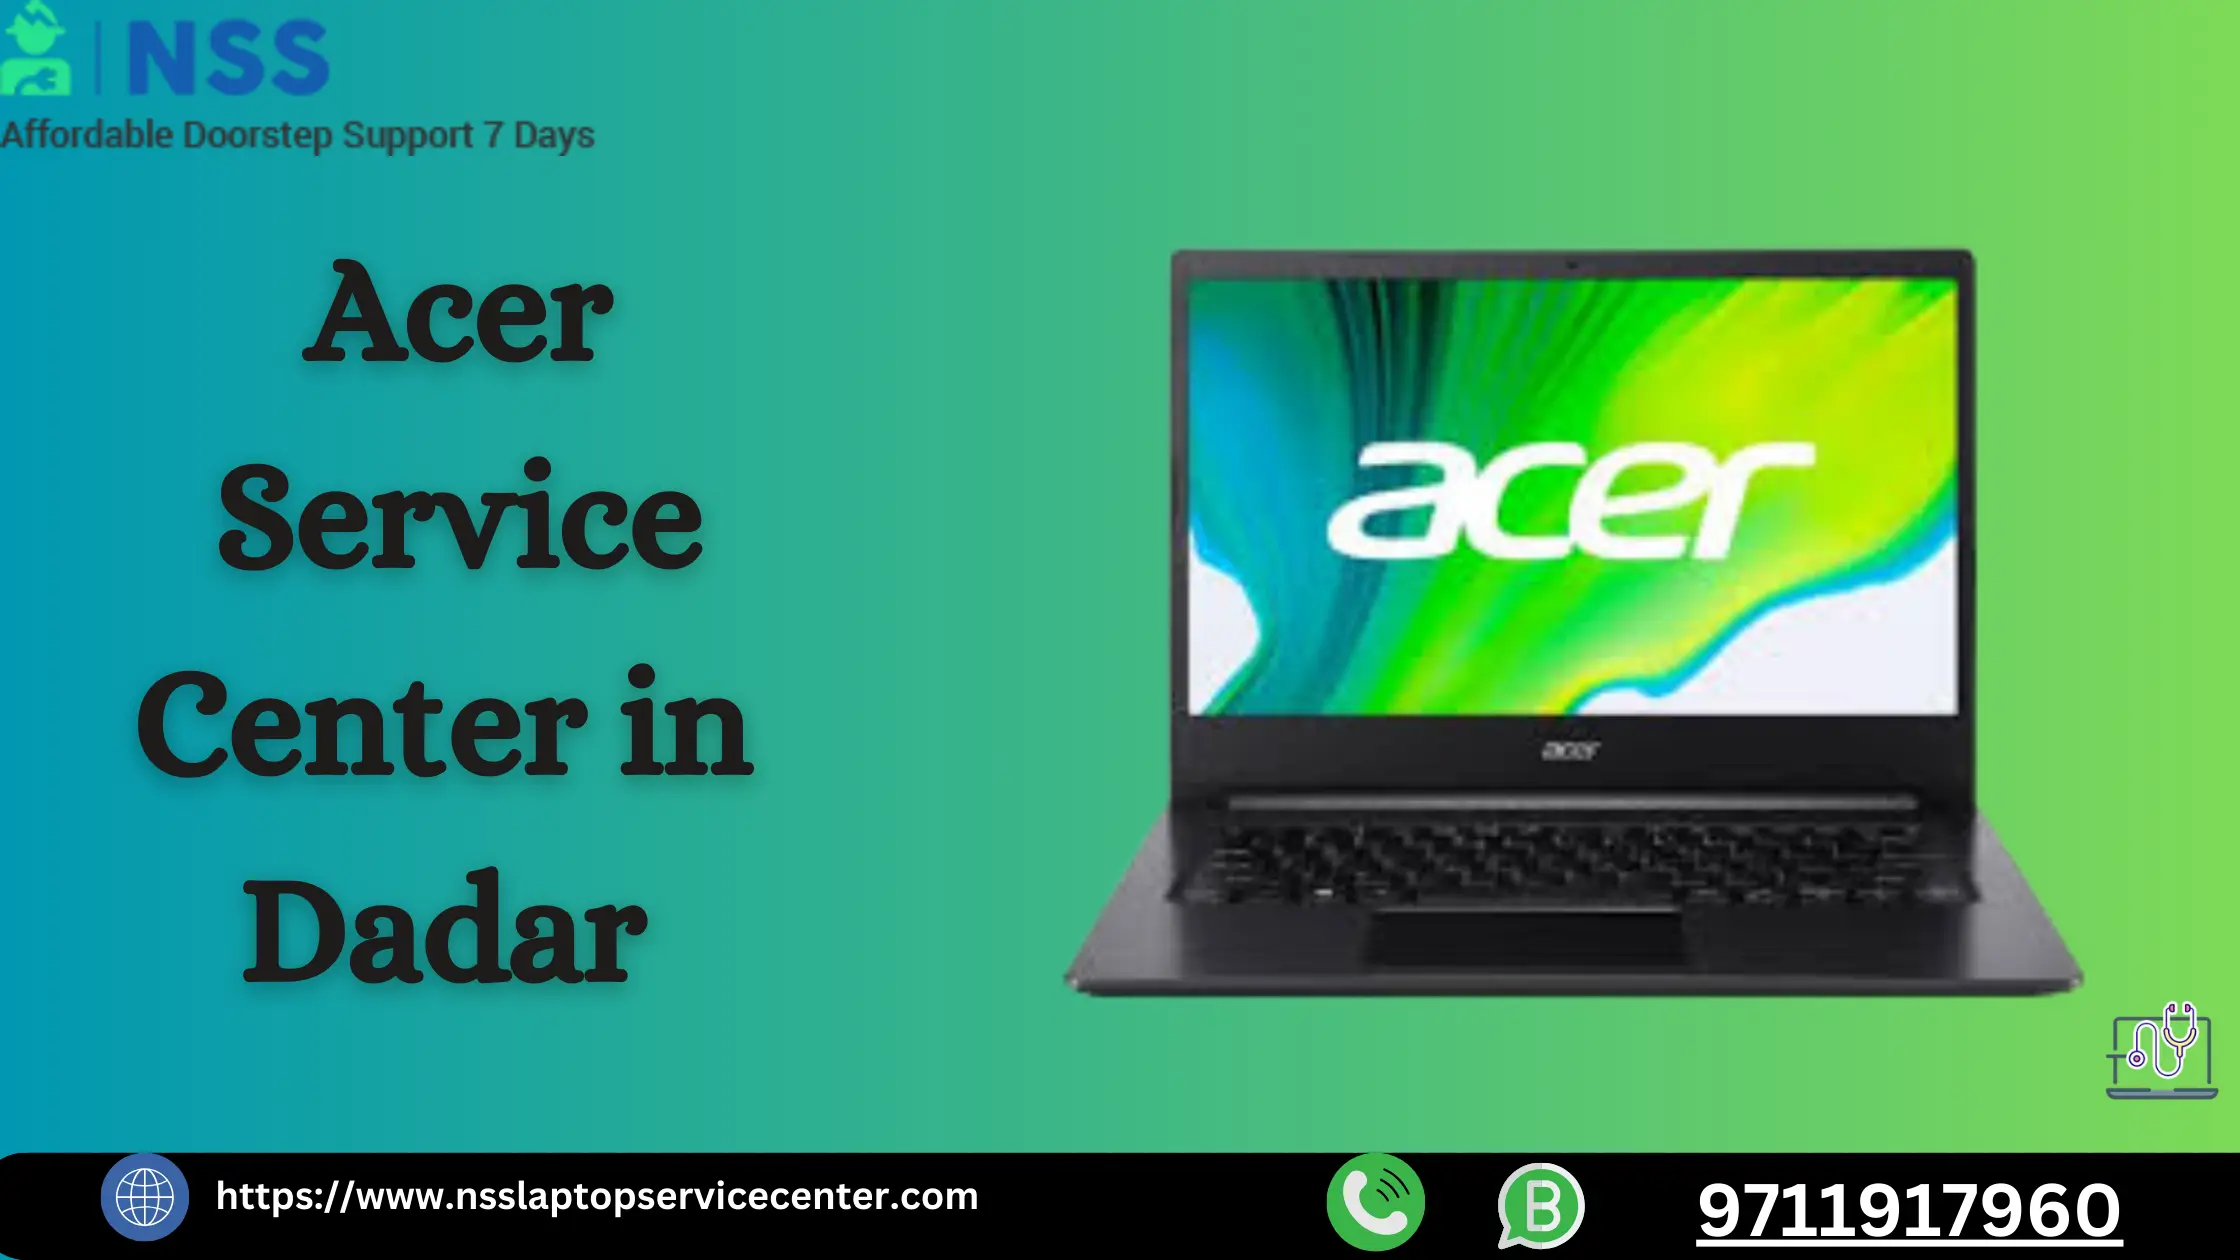 Acer Service Center In Dadar Near Mumbai